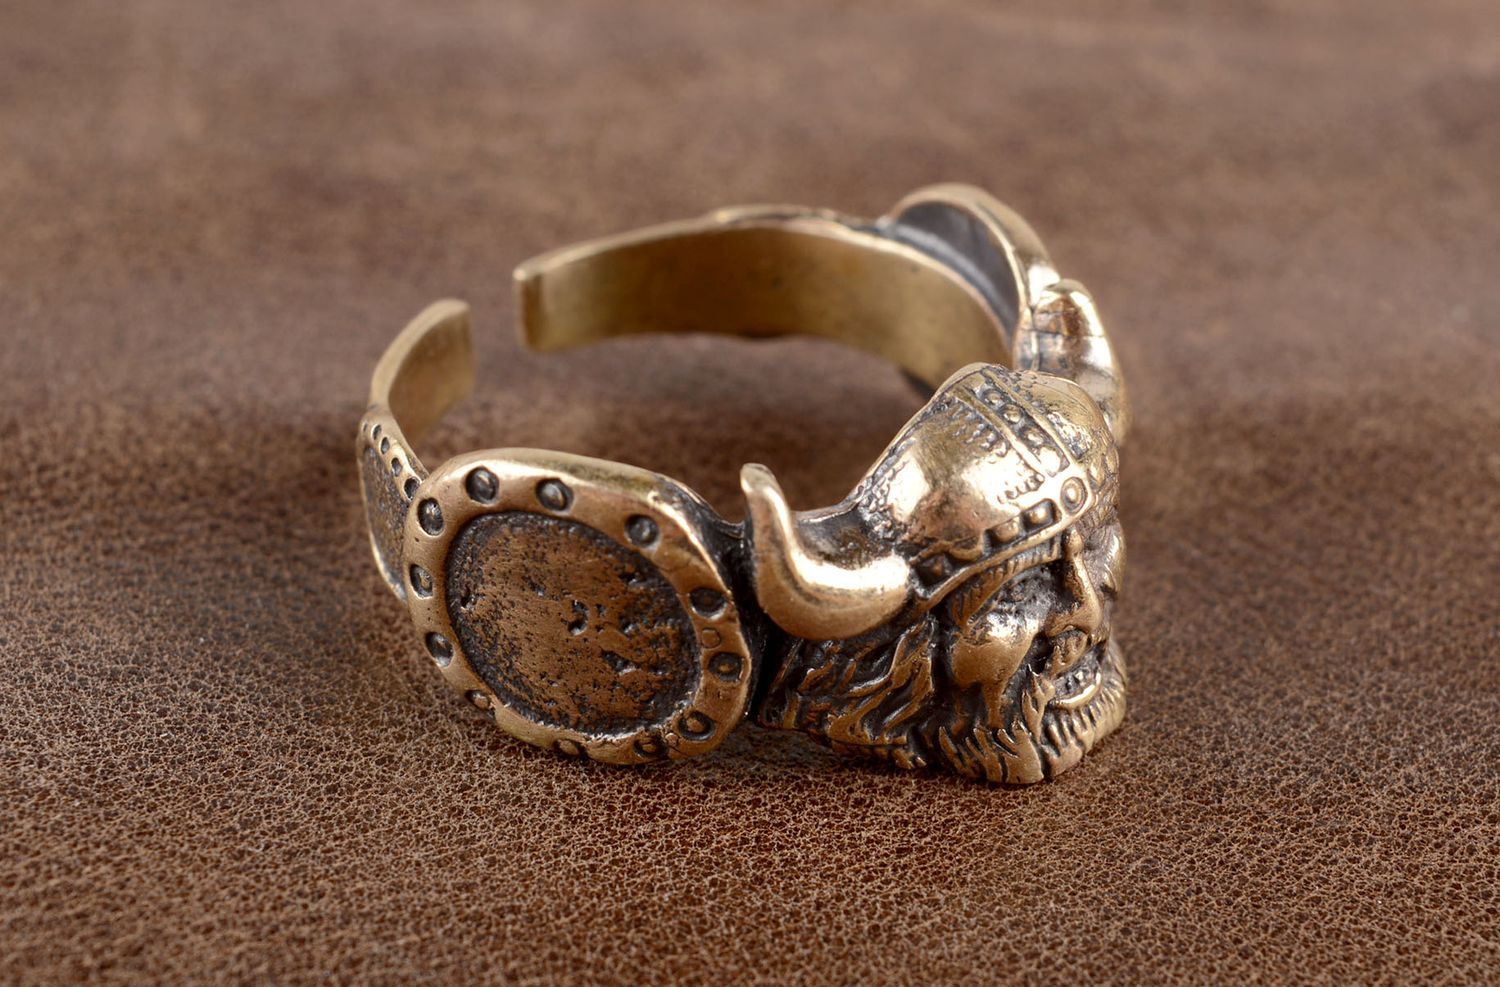 Мужское кольцо ручной работы красивое кольцо мужской аксессуар крупный Викинг фото 1